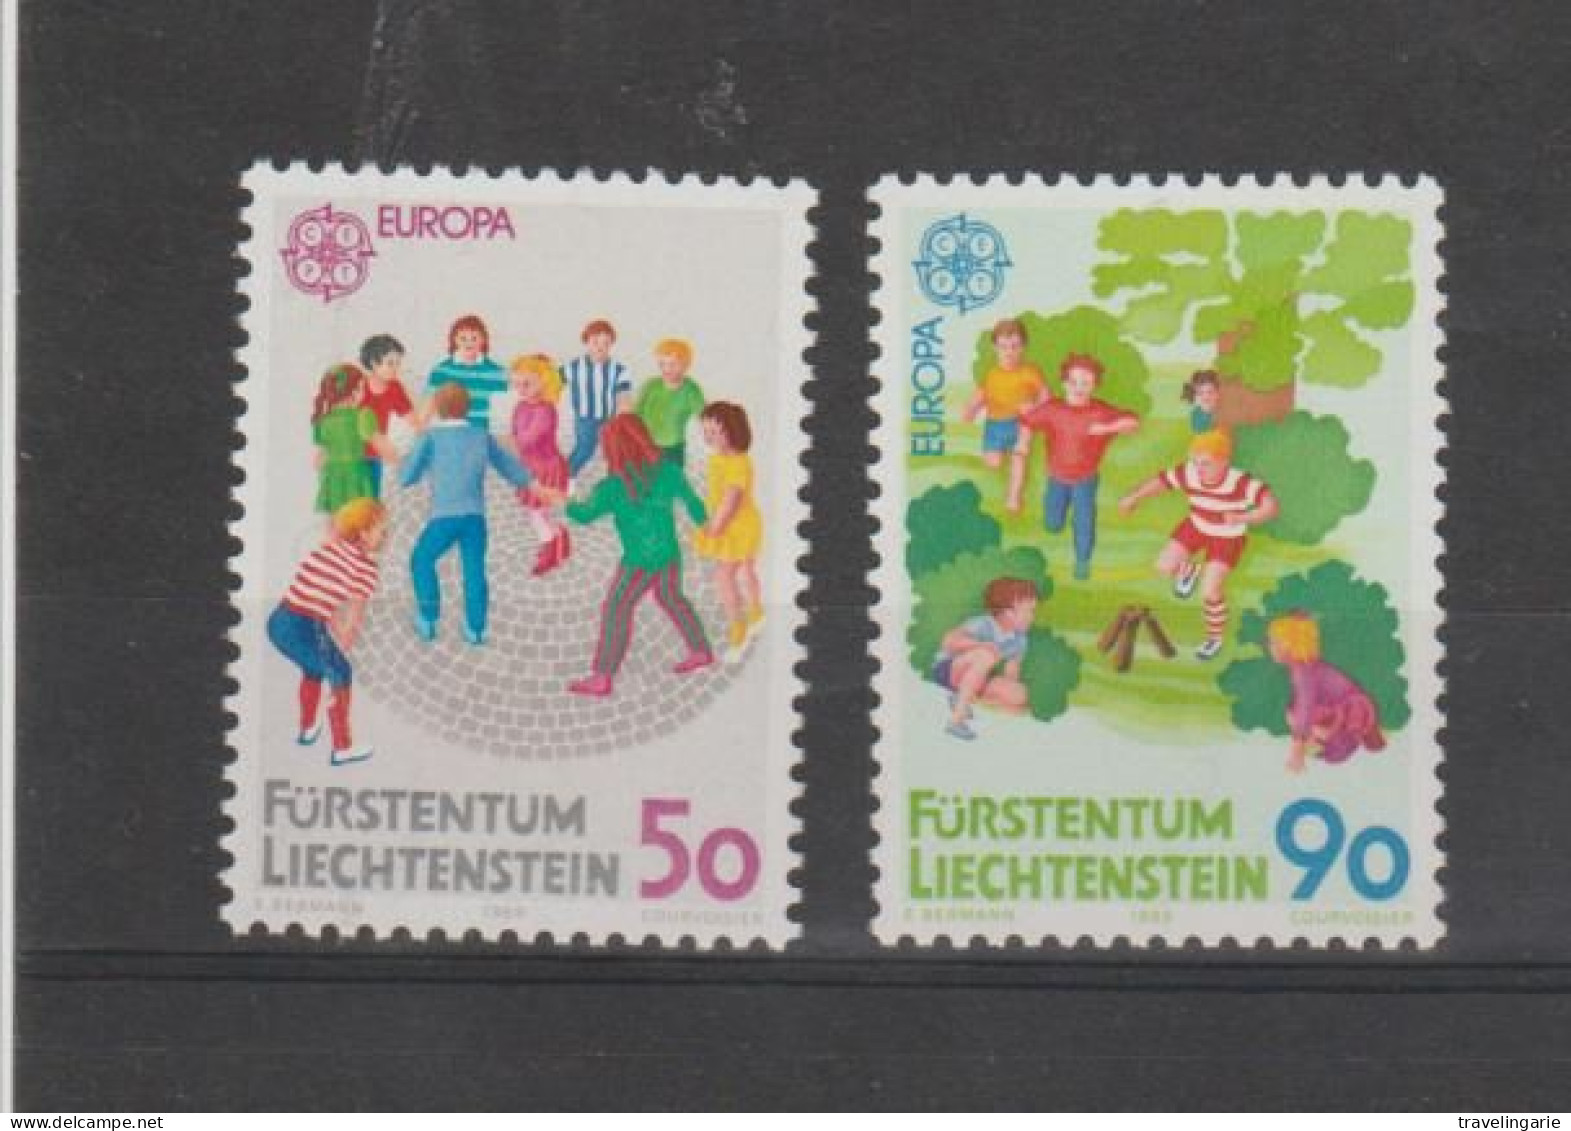 Liechtenstein 1989 Europa Cept - Children's Games ** MNH - 1989